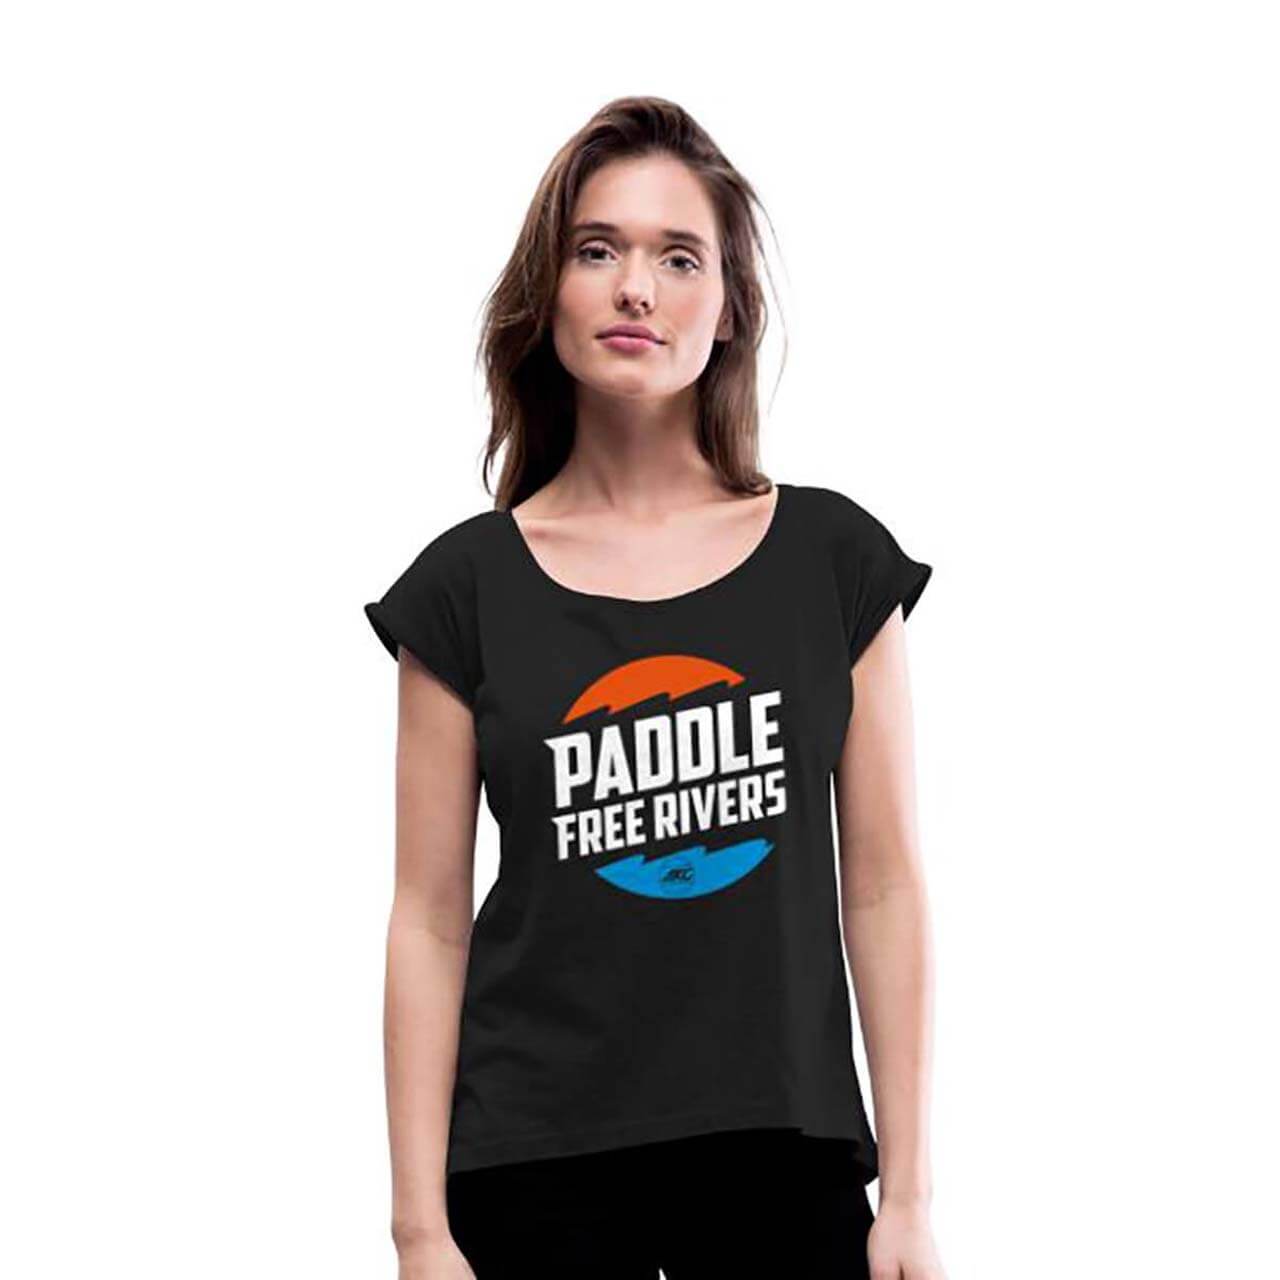 AKC Paddle Free Rivers Damen T-Shirt - Black, XS